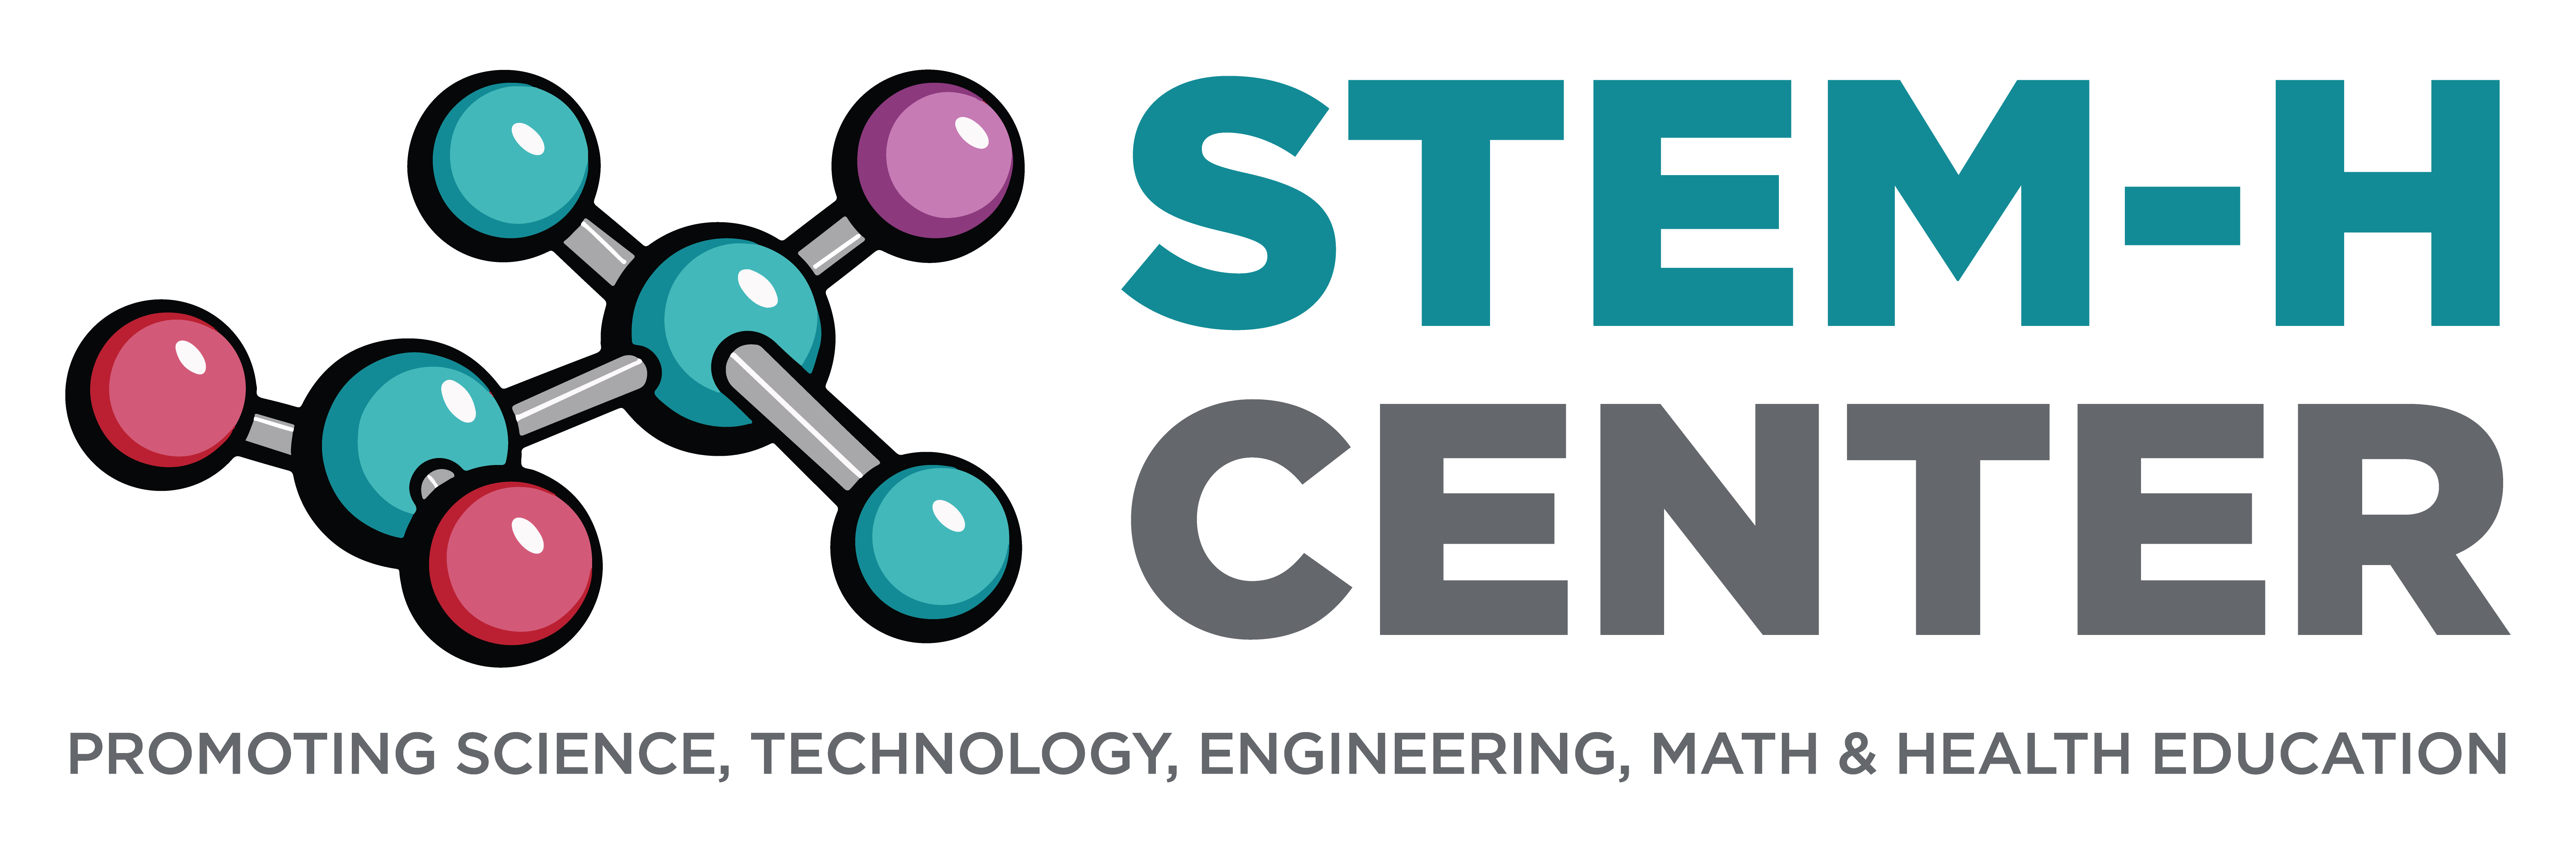 STEM-H 中心图形